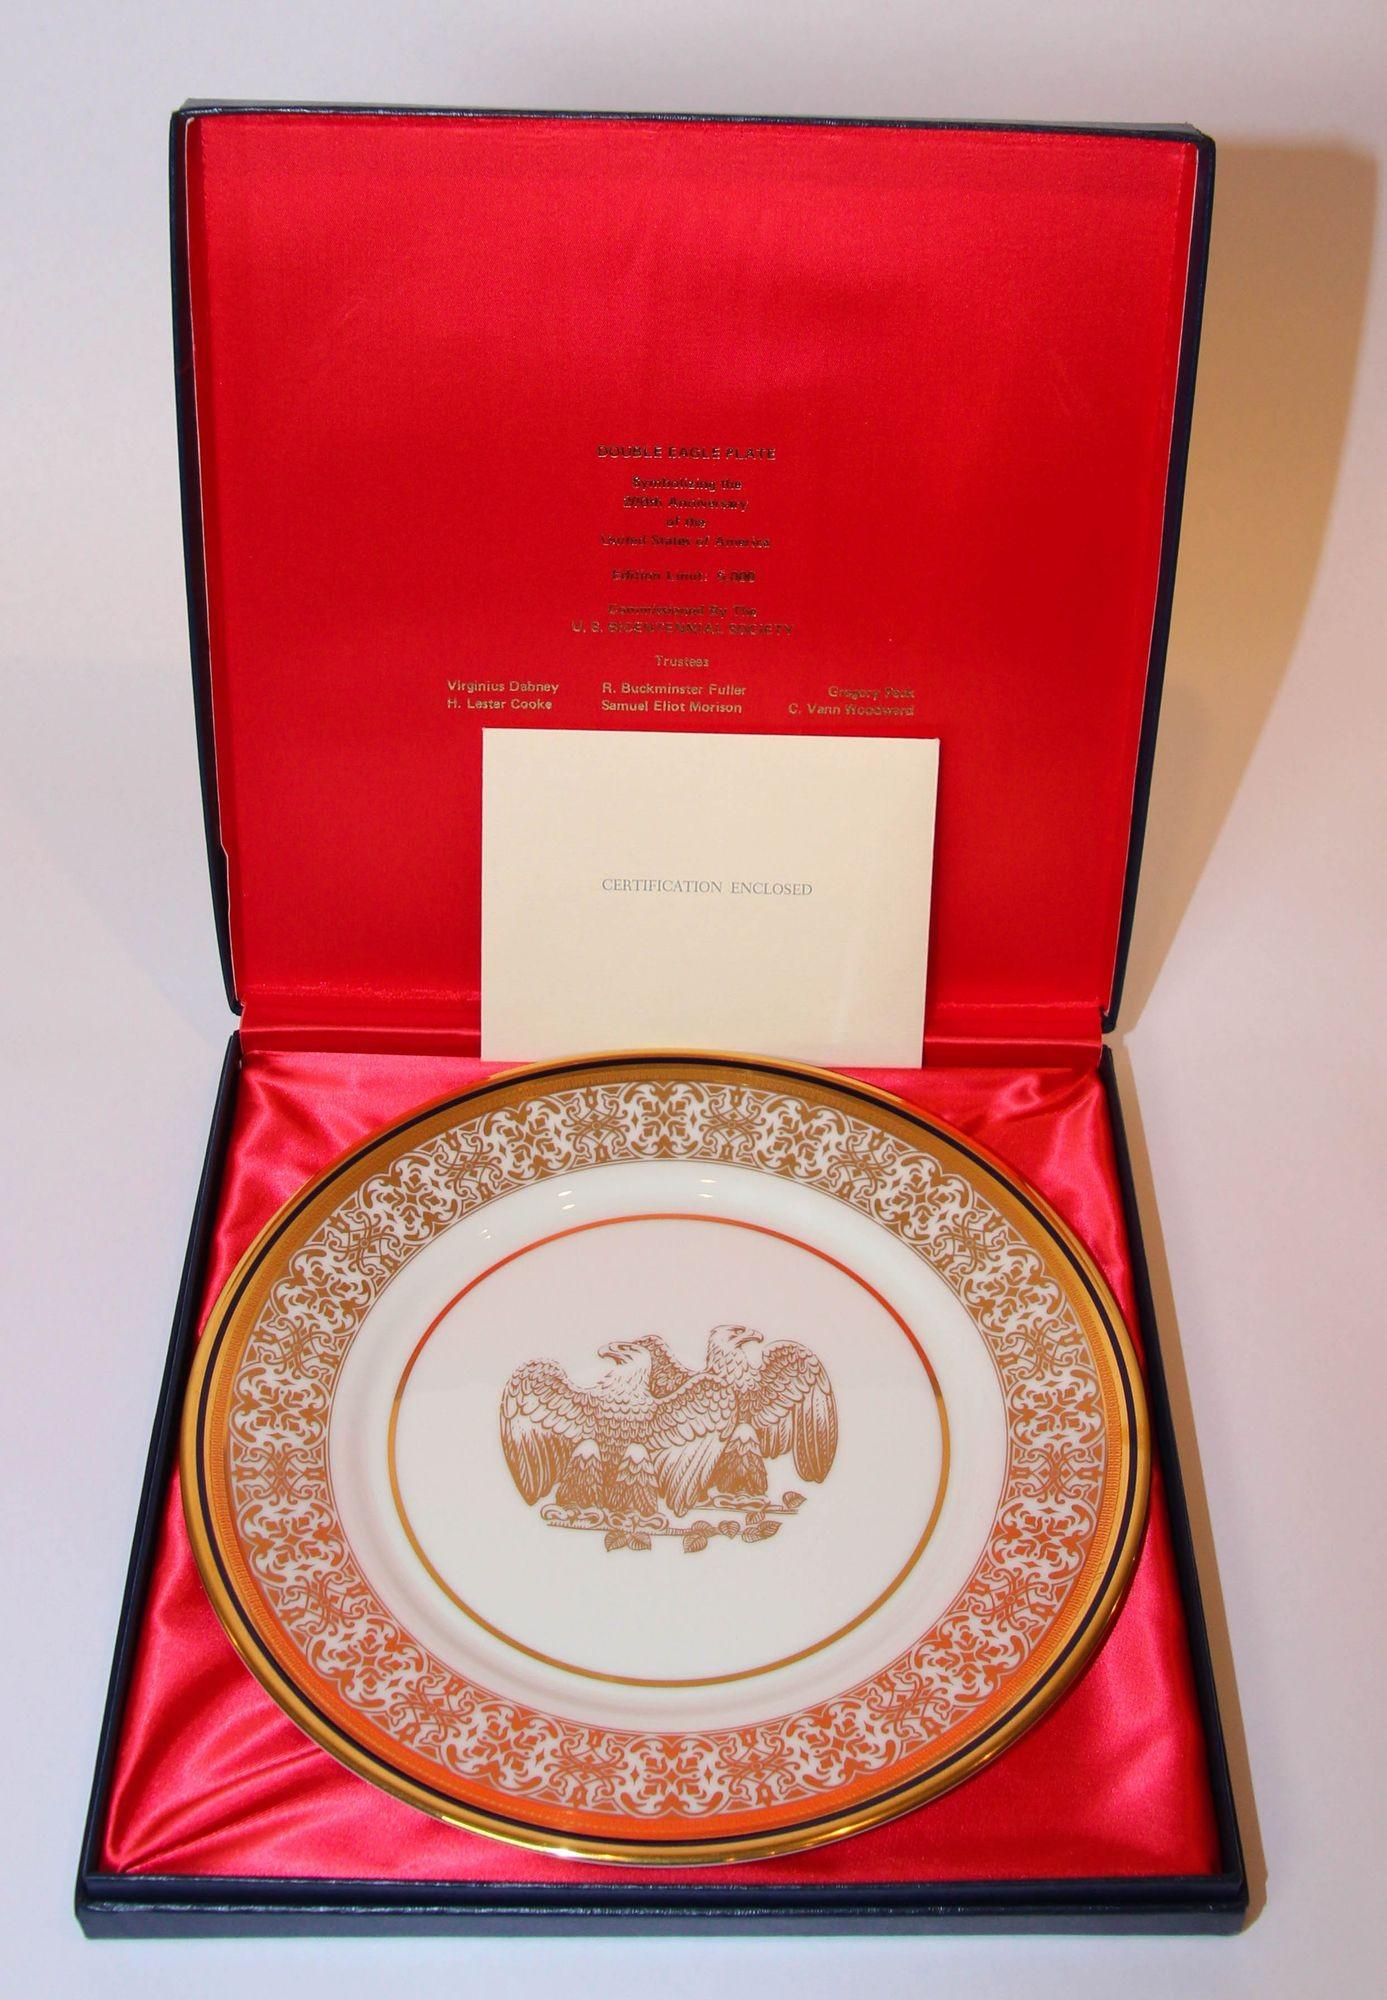 Plaque US Mint Bicentennial Double Eagle symbolisant les 200 ans des États-Unis.
Il est fabriqué en porcelaine fine avec de l'or 24k dans une boîte bleu cobalt ; il est livré dans une boîte bleu marine avec le double aigle en or au centre de